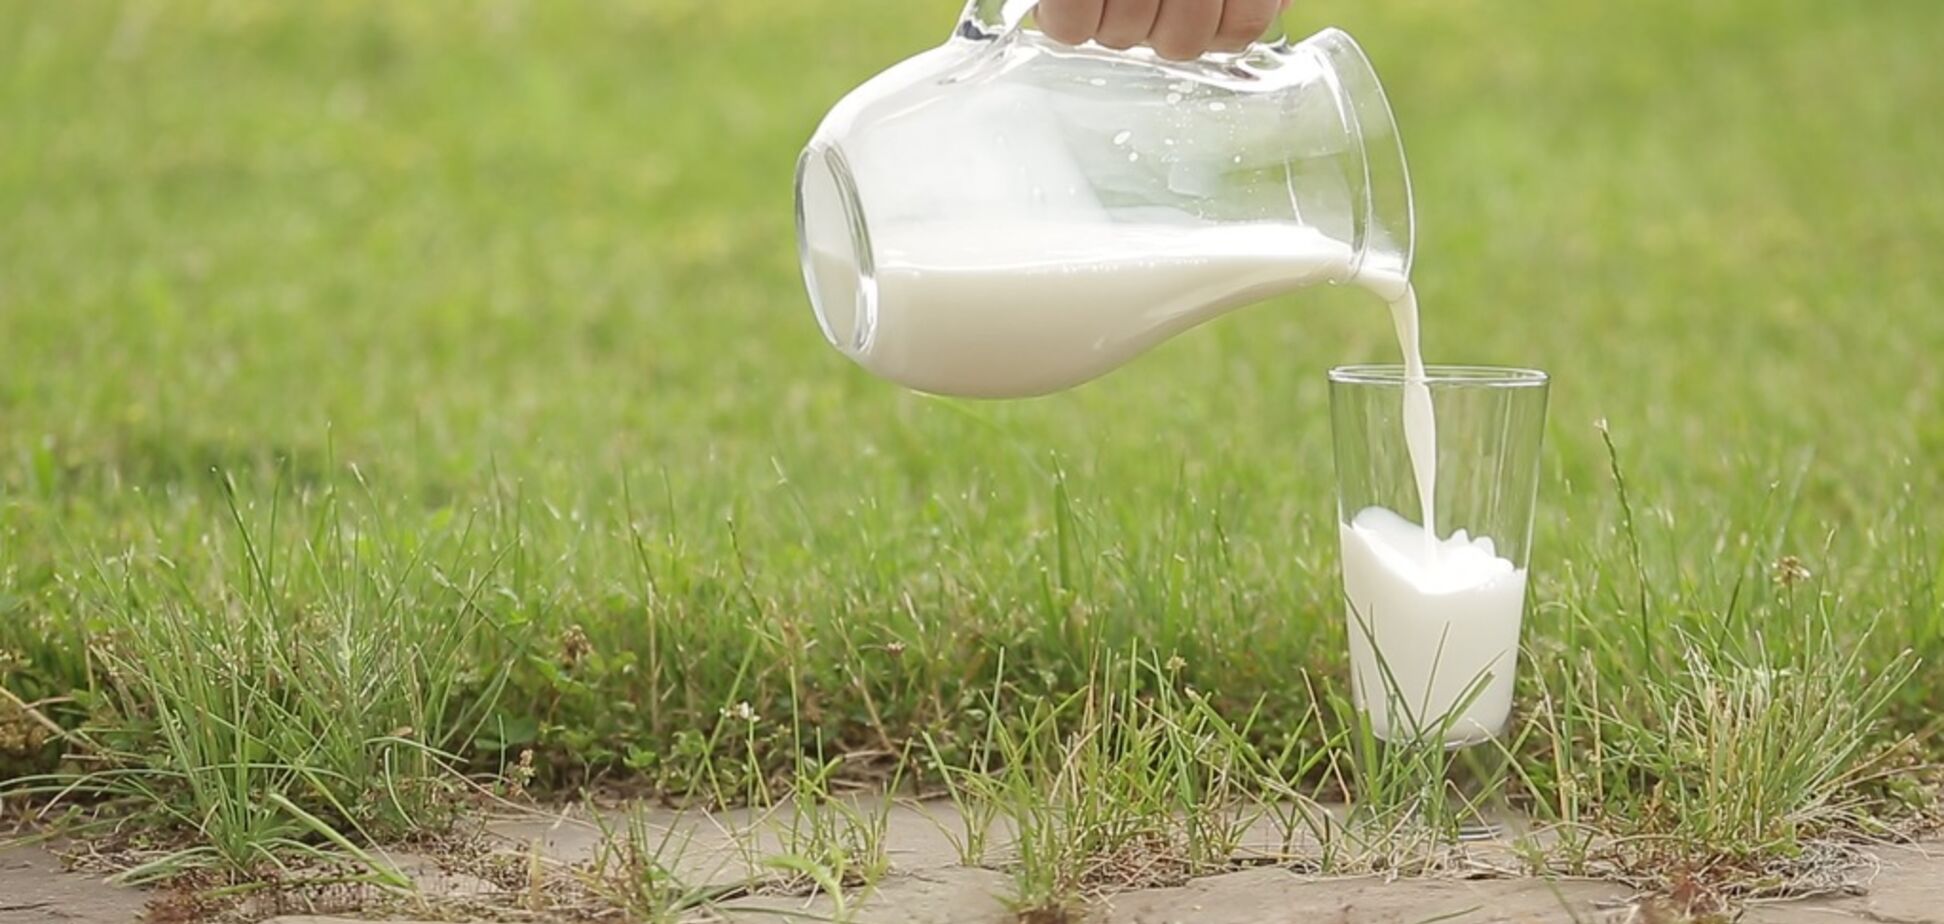 Как правильно выбрать в магазине молоко: товаровед дала совет